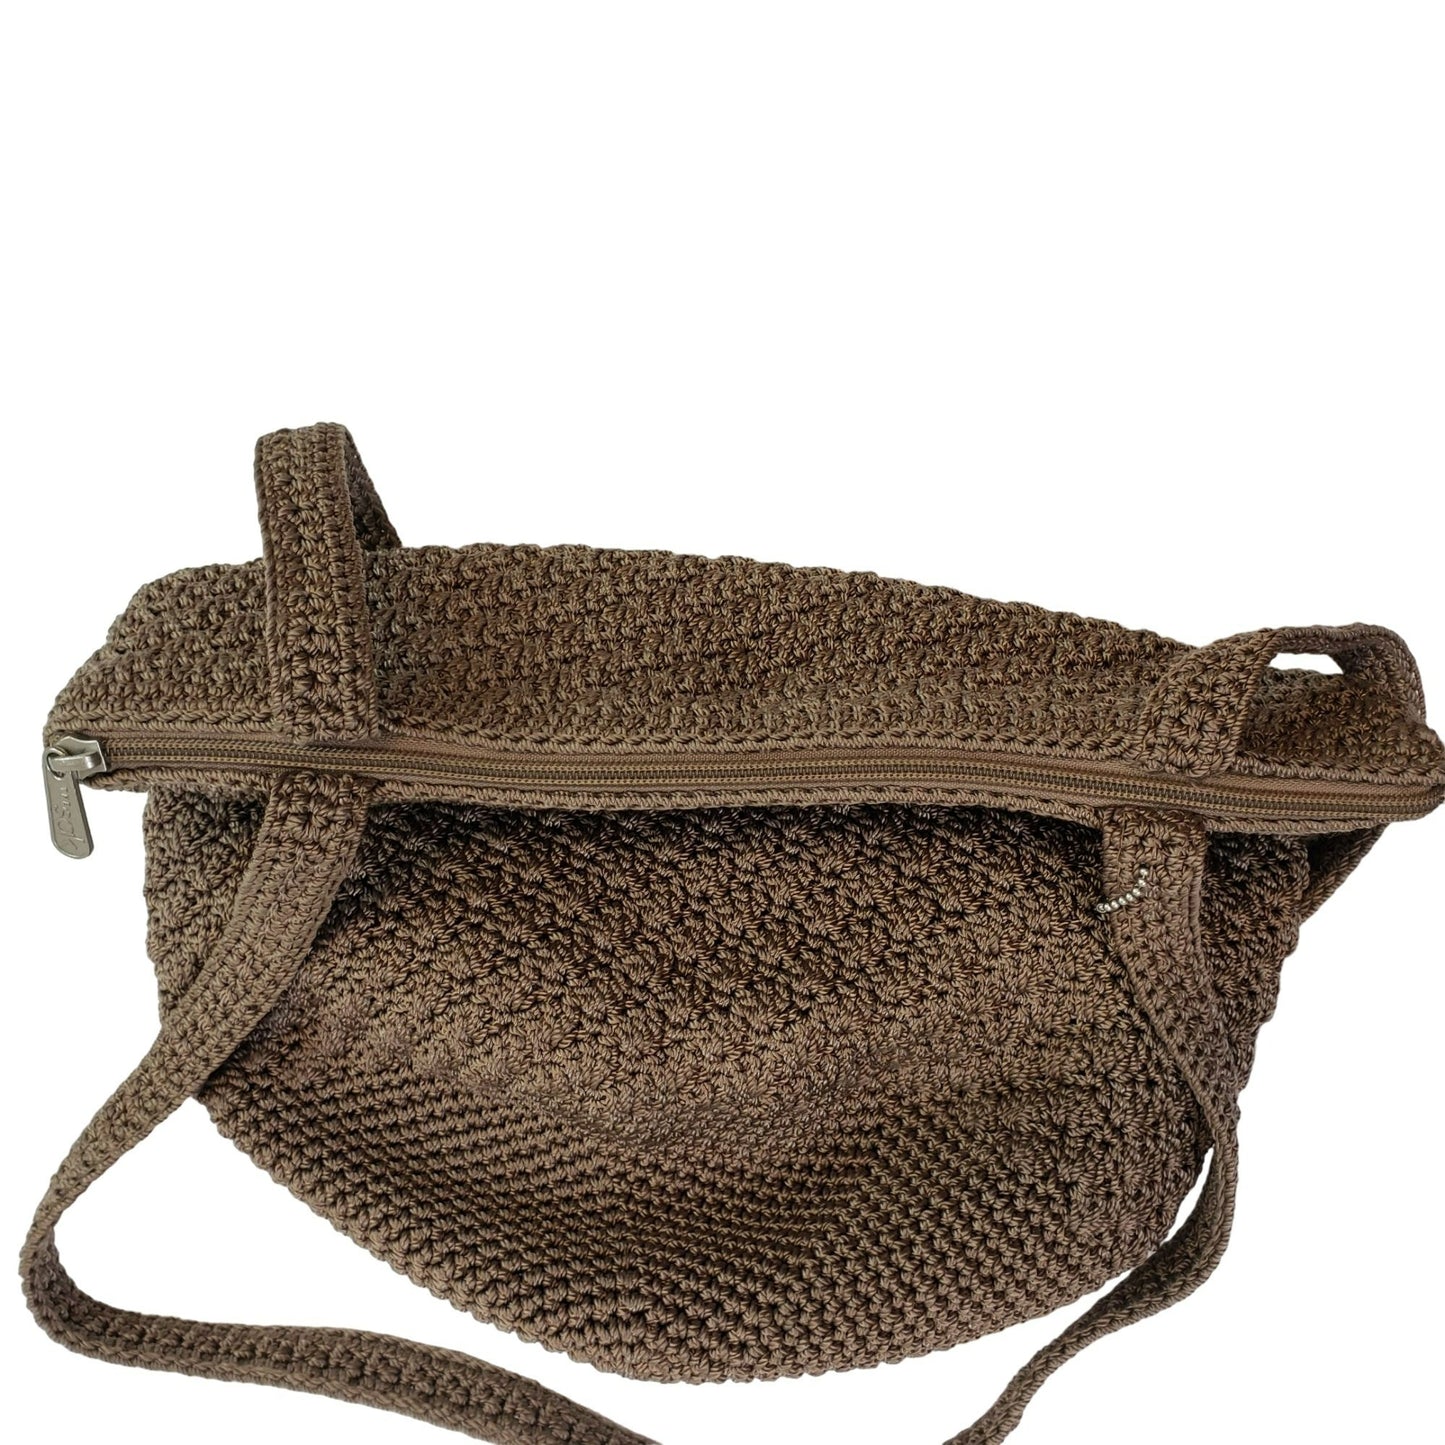 The Sak Nylon Woven Medium Satchel Bag